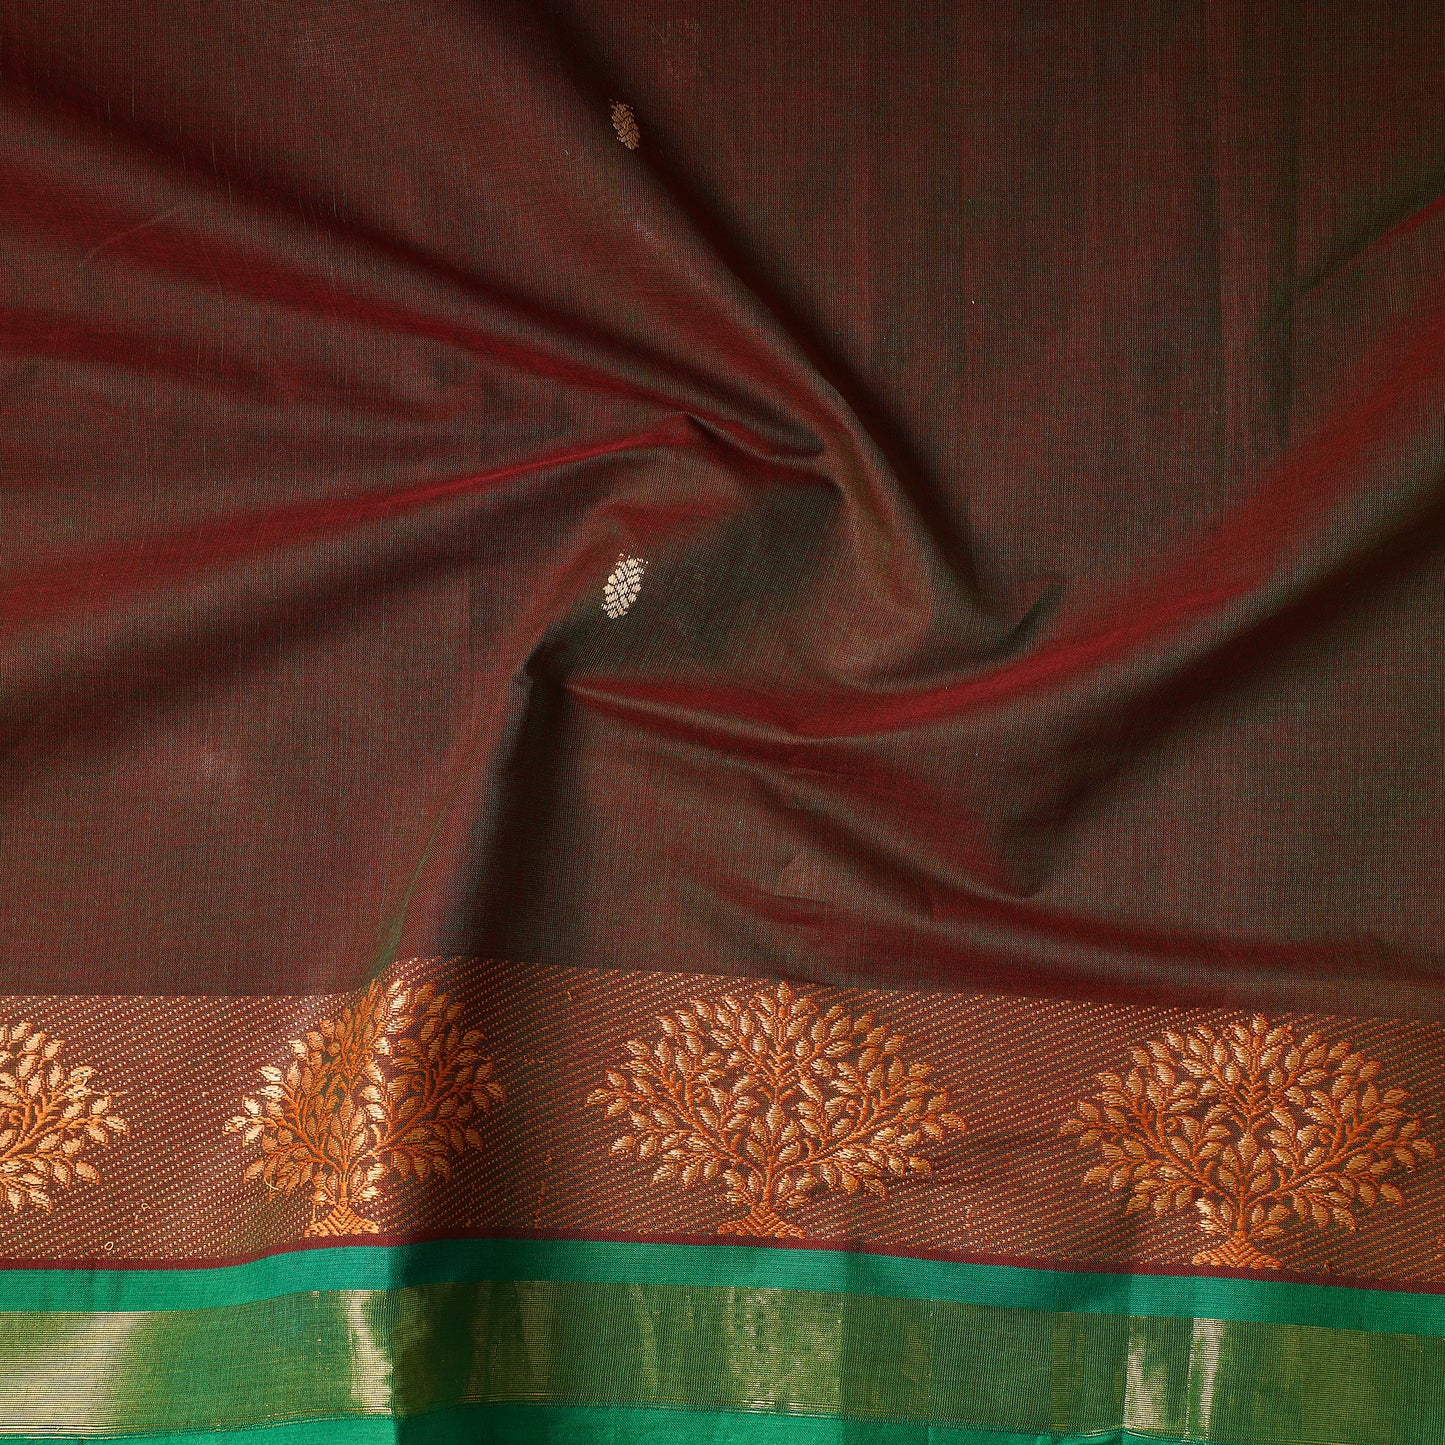 Brown - Kanchipuram Cotton Precut Fabric (1.9 Meter)